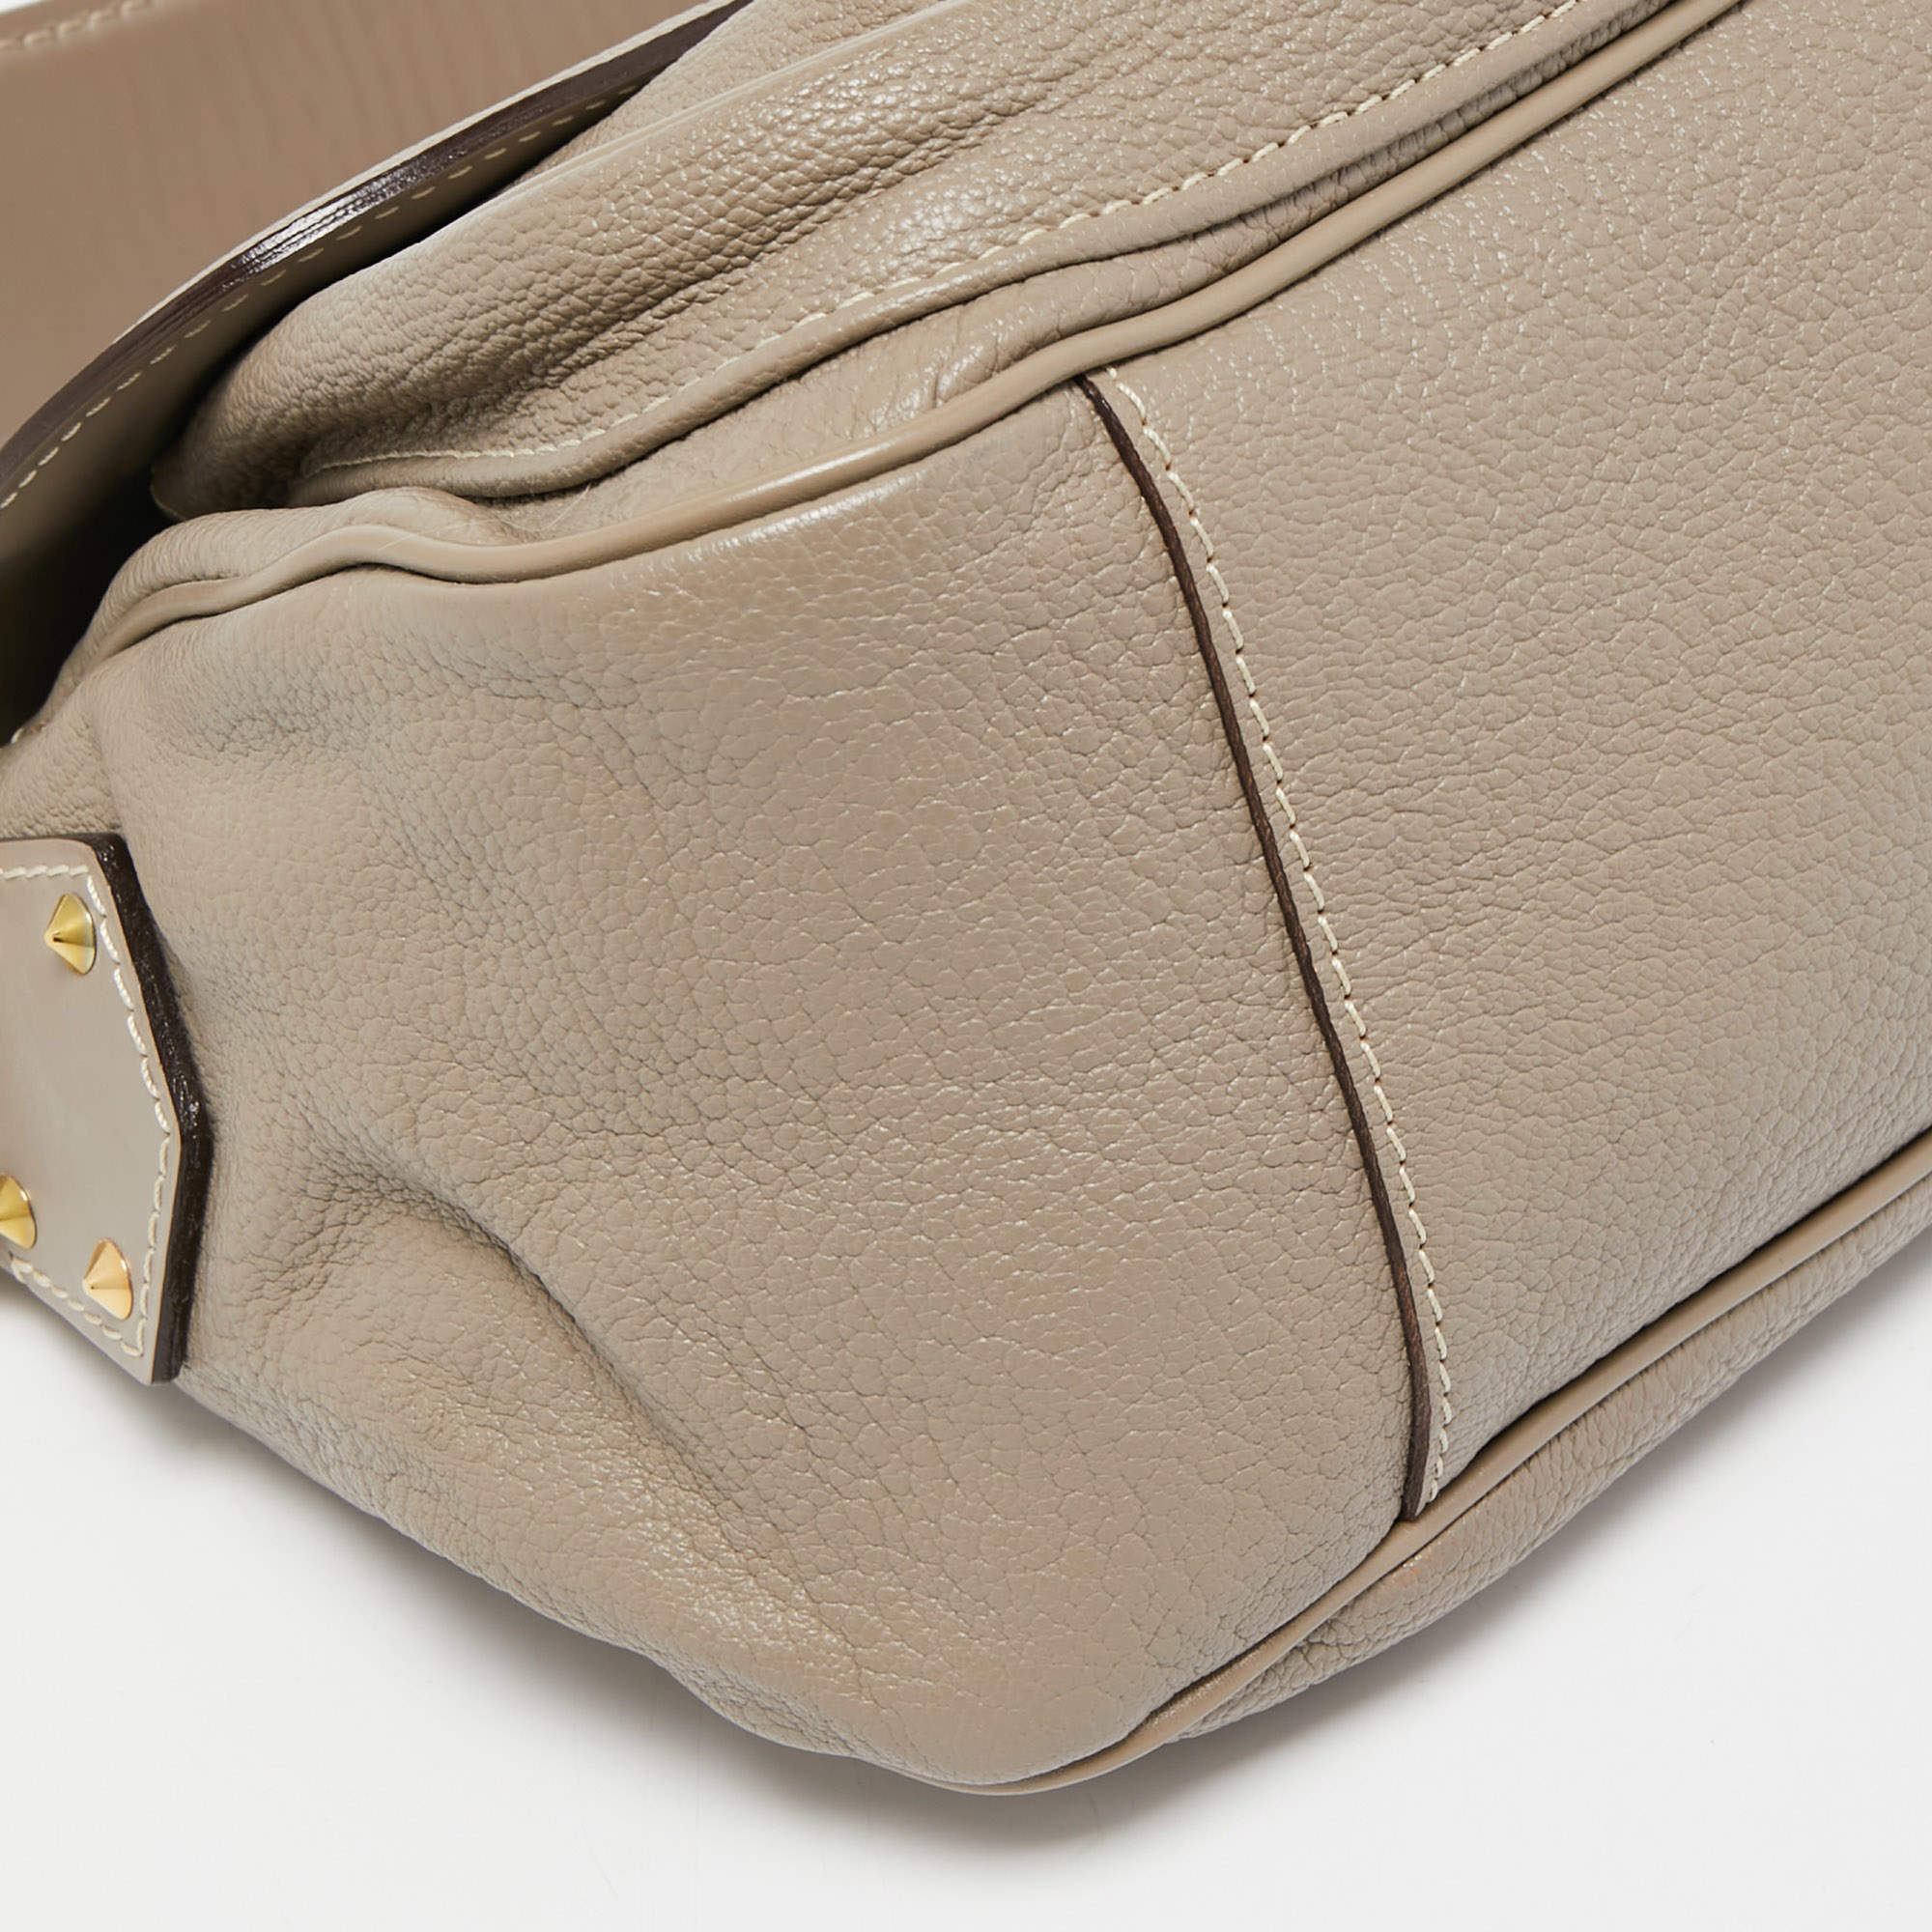 Louis Vuitton Verone Suhali Leather Le Confident Bag